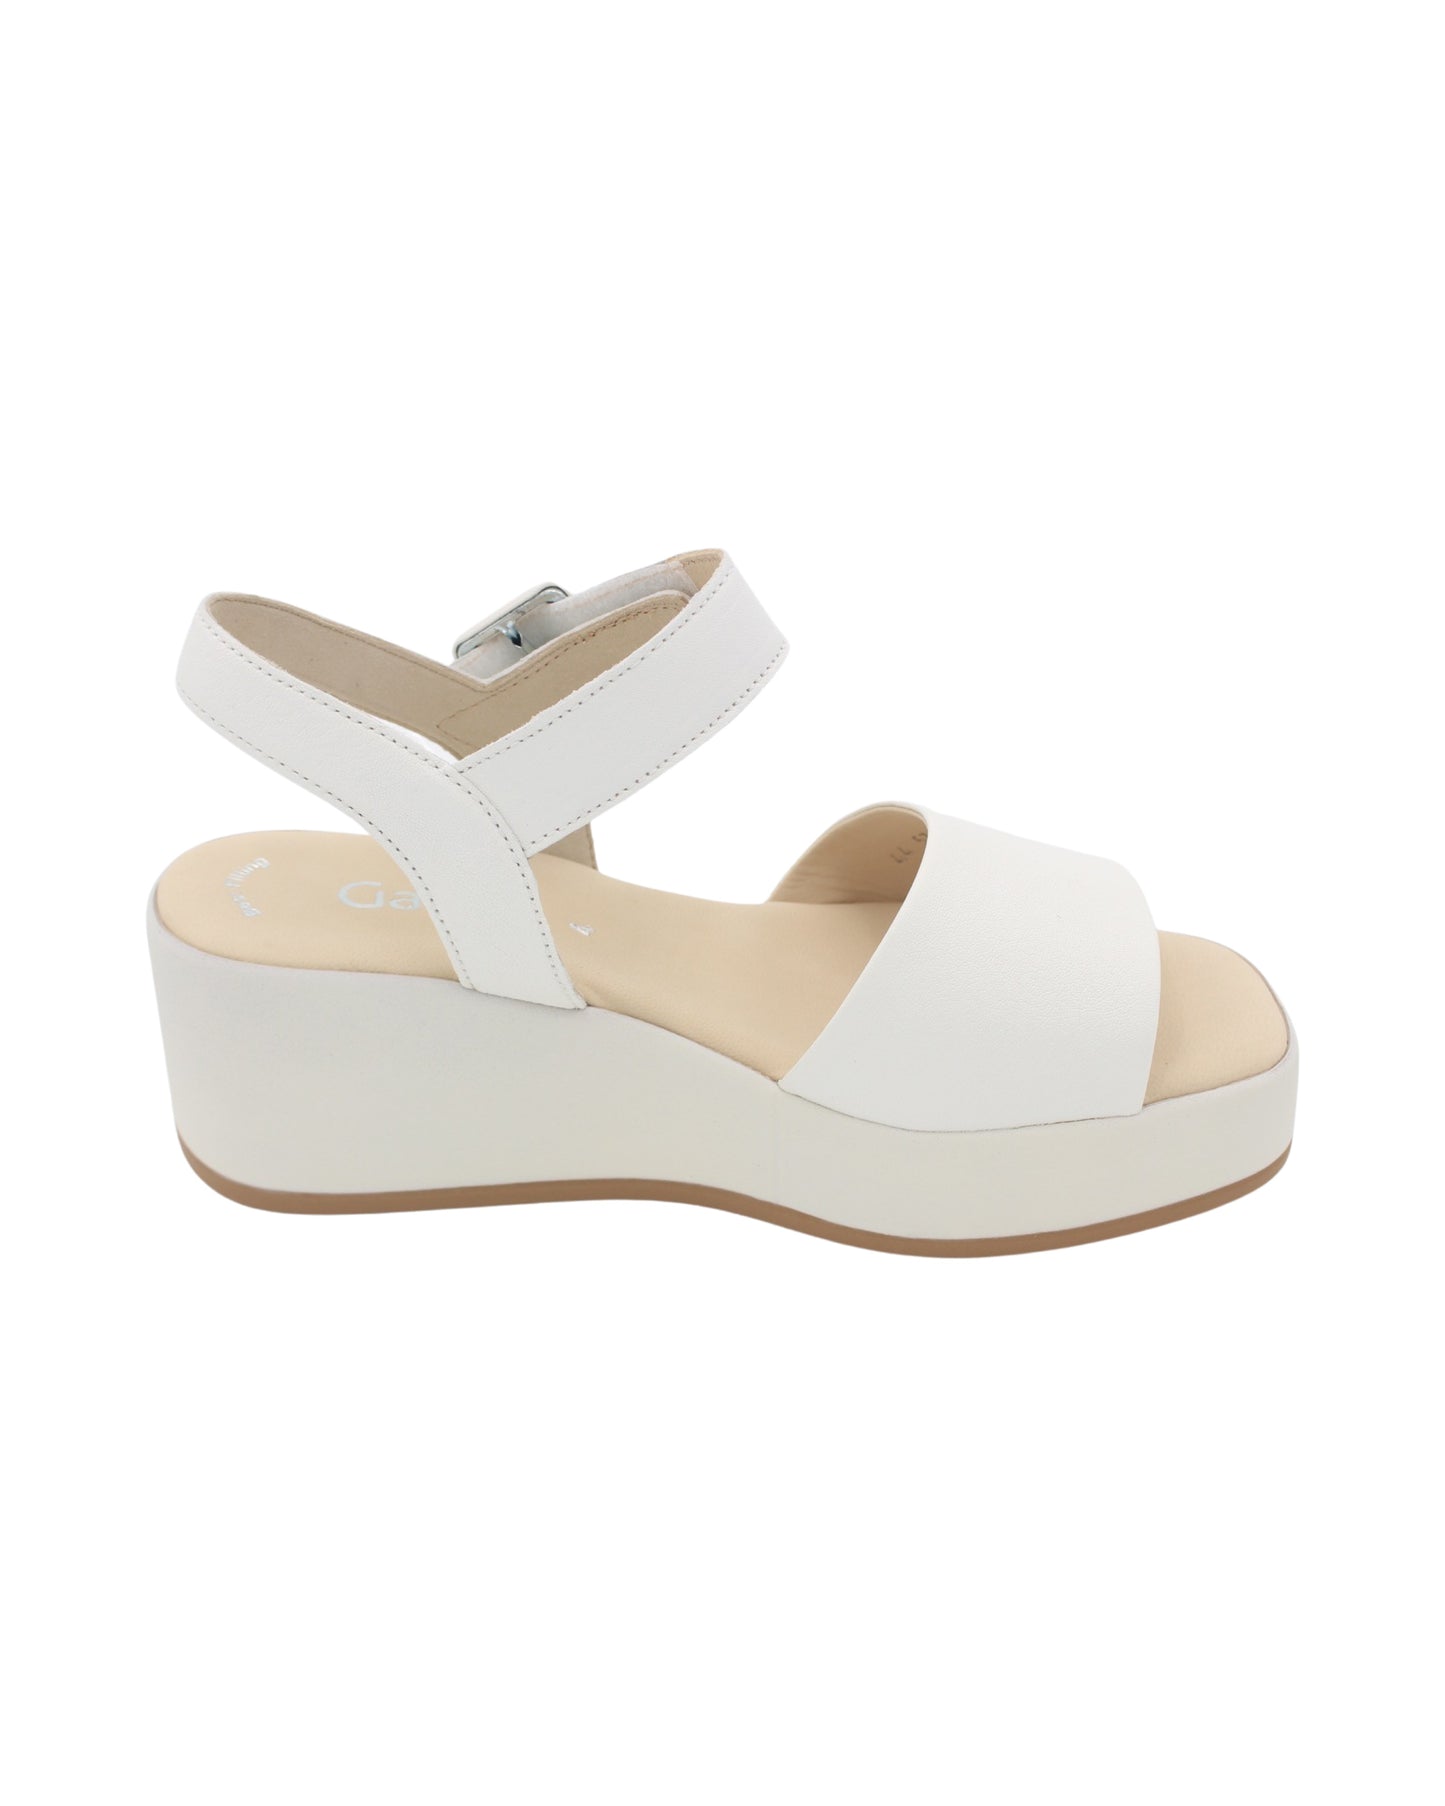 Gabor - Ladies Shoes Sandals Cream (2201)